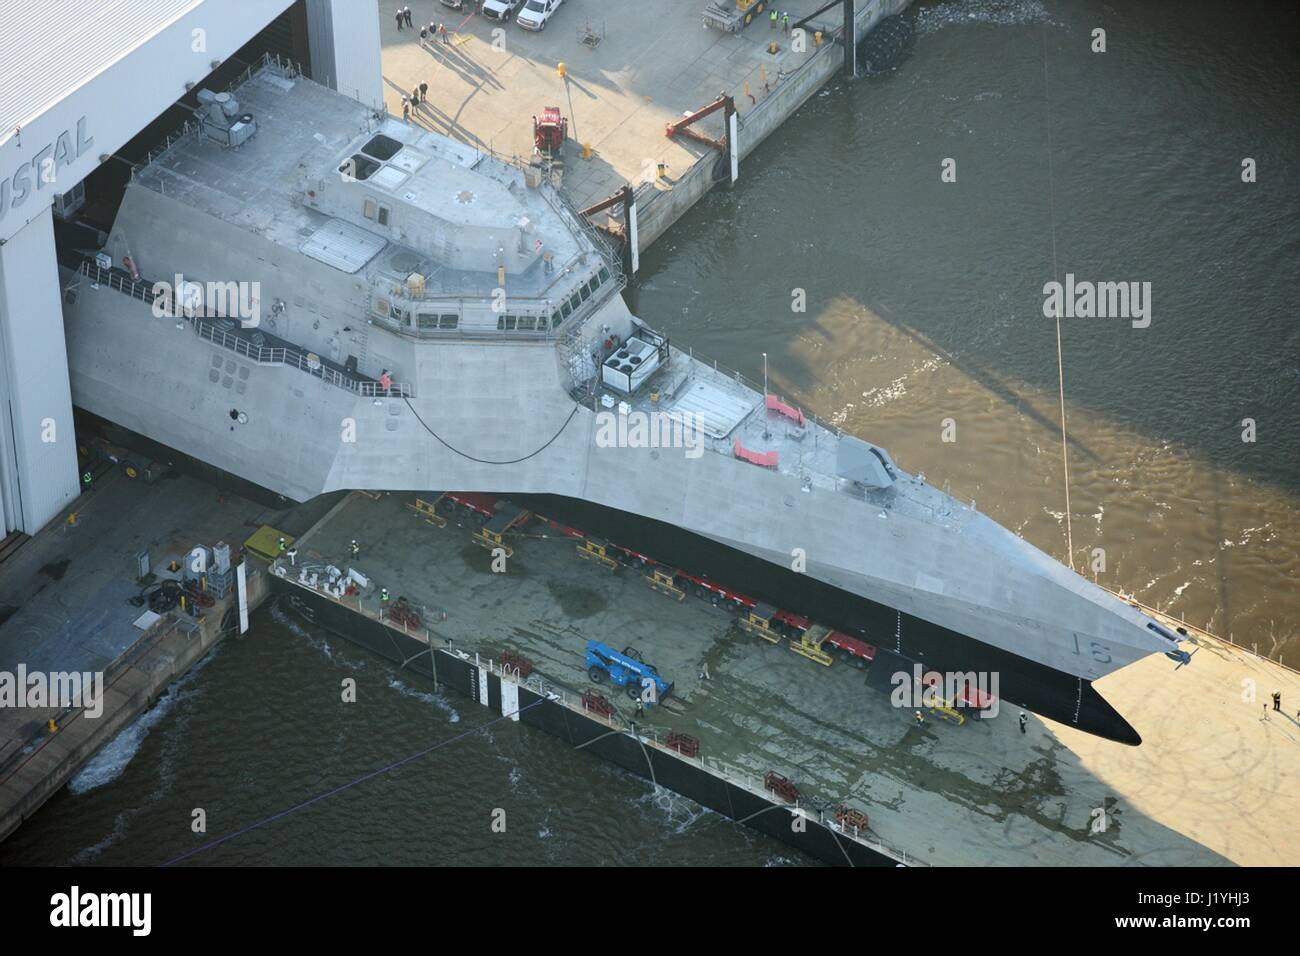 Gli Stati Uniti Navy indipendenza-class Littoral Combat Ship USS Tulsa rotoli sul lancio di Crowley a chiatta Austal USA durante la prima fase del suo processo di lancio 16 marzo 2016 nel Mobile, Alabama. (Foto dal Navy US foto via Planetpix) Foto Stock